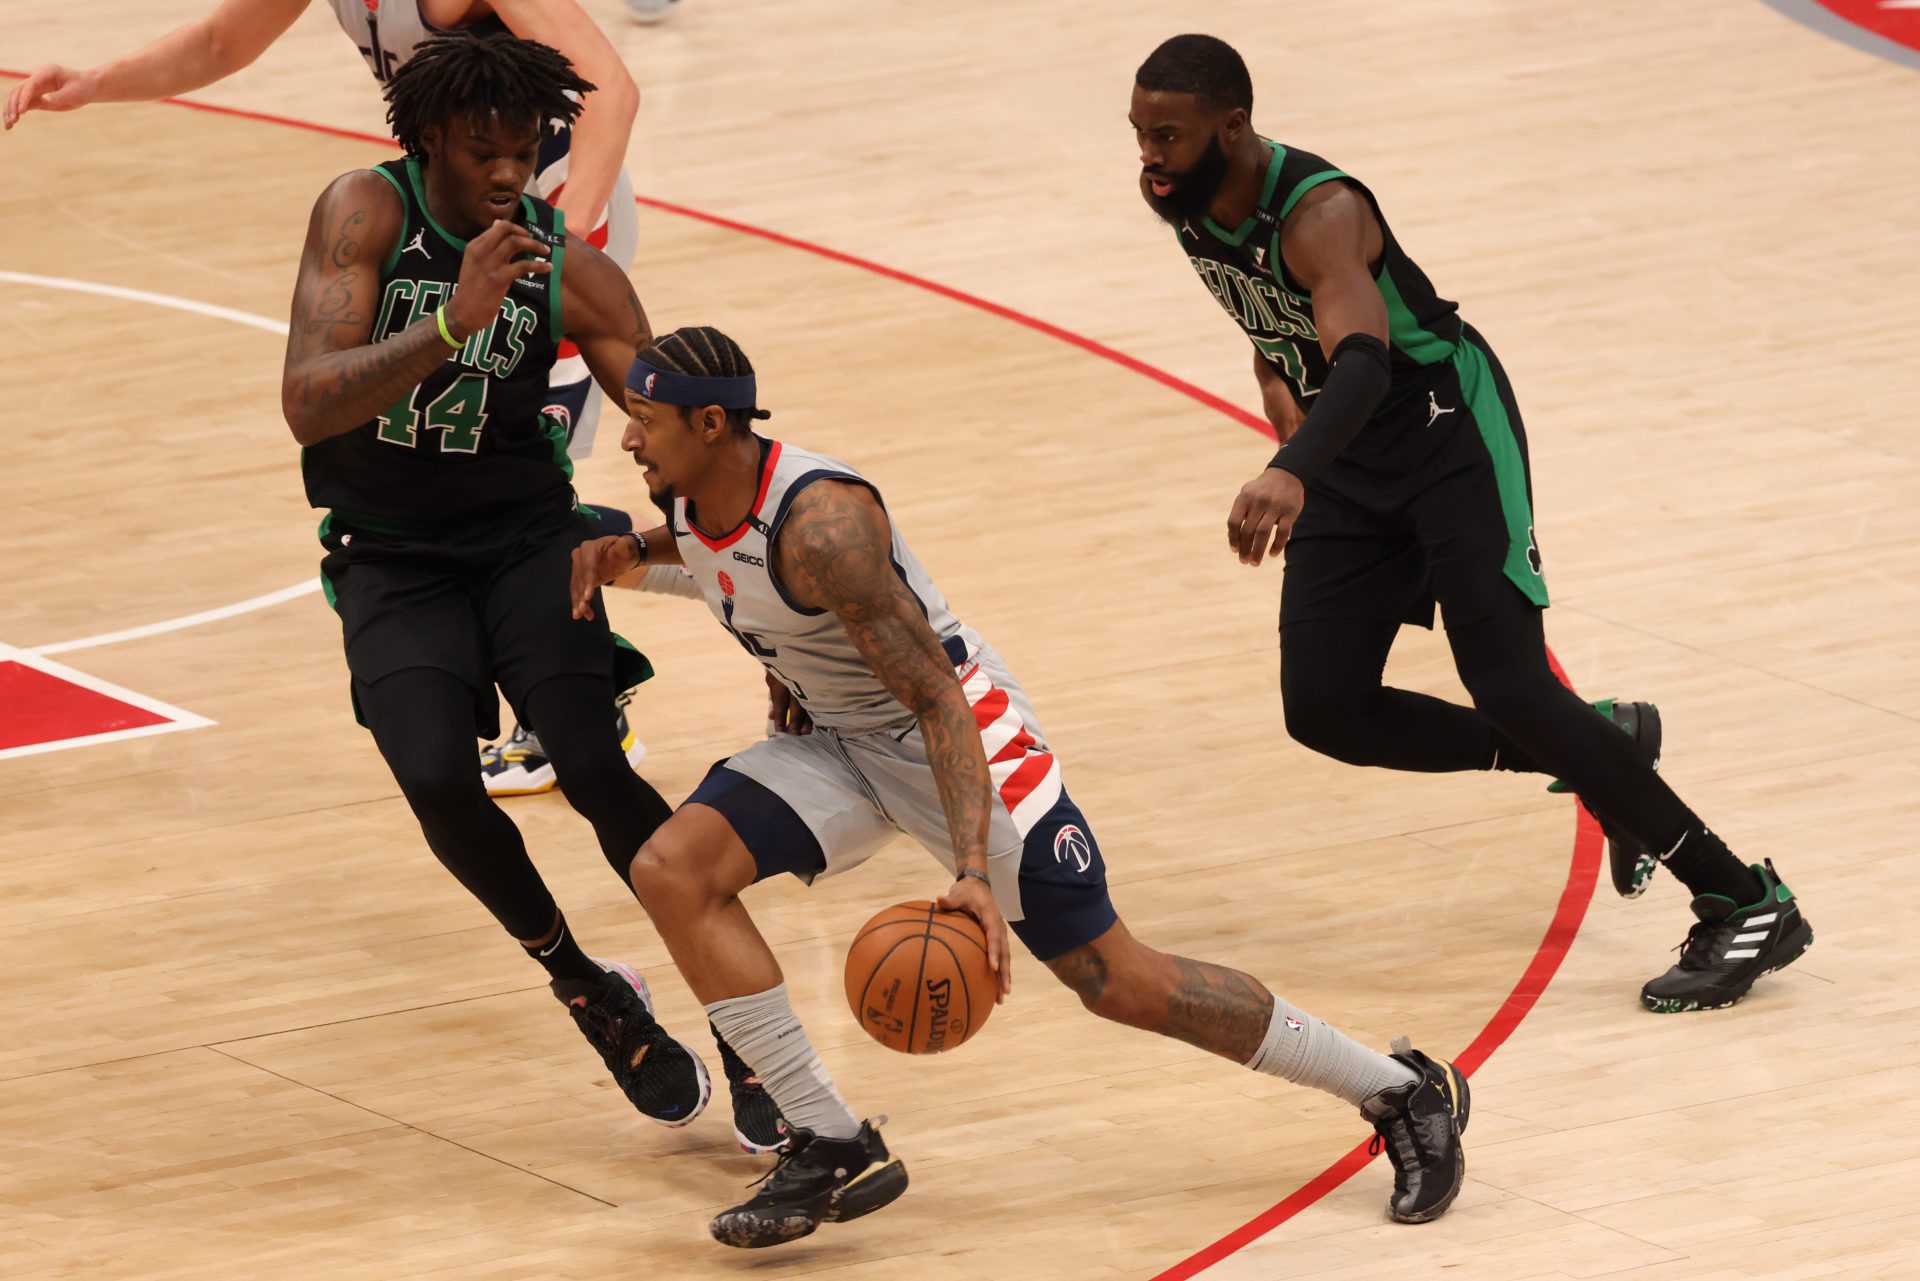 Bradley Beal des Wizards de Washington qualifie la perte choquante contre les Celtics de «merde la plus loufoque» qu'il ait jamais vue